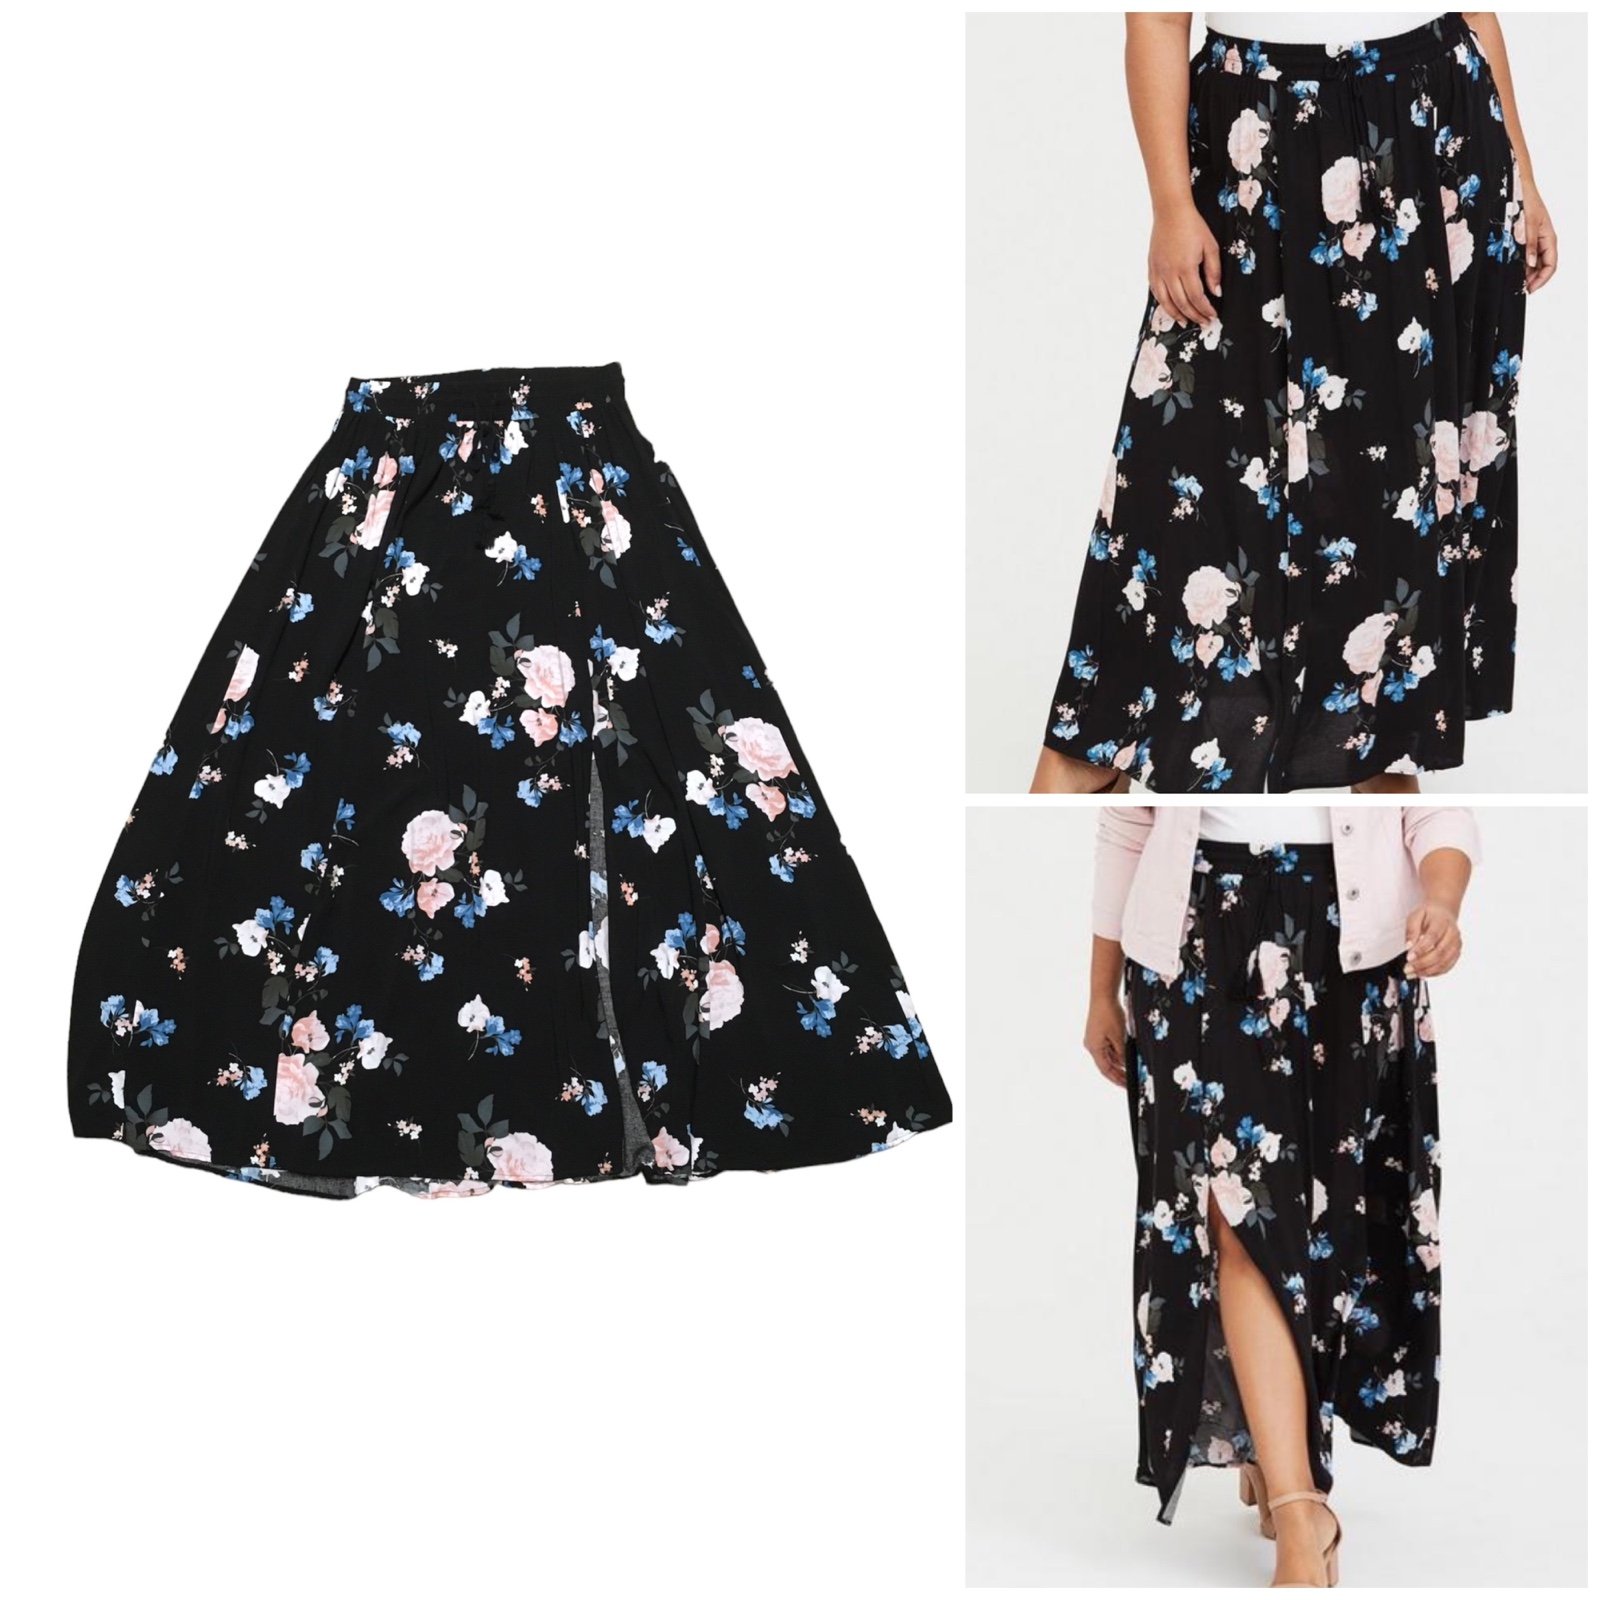 The Best Seller Torrid Maxi Challis Skirt Floral Black 